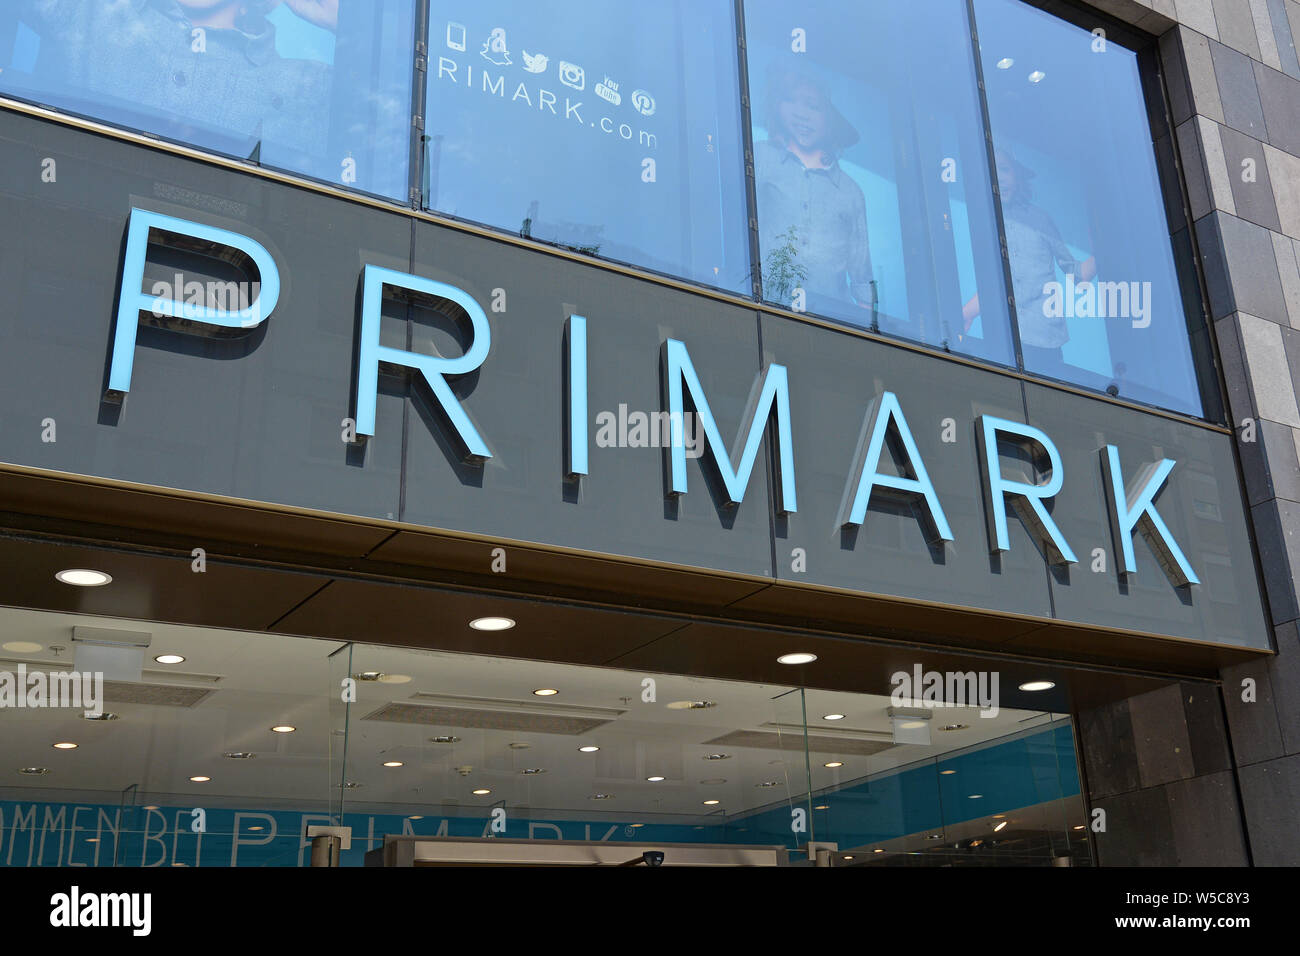 Mannheim, Deutschland - Juli 2019: Store Front mit Logo billige Bekleidung Einzelhandel Marke "Primark" in Deutschland Stockfoto